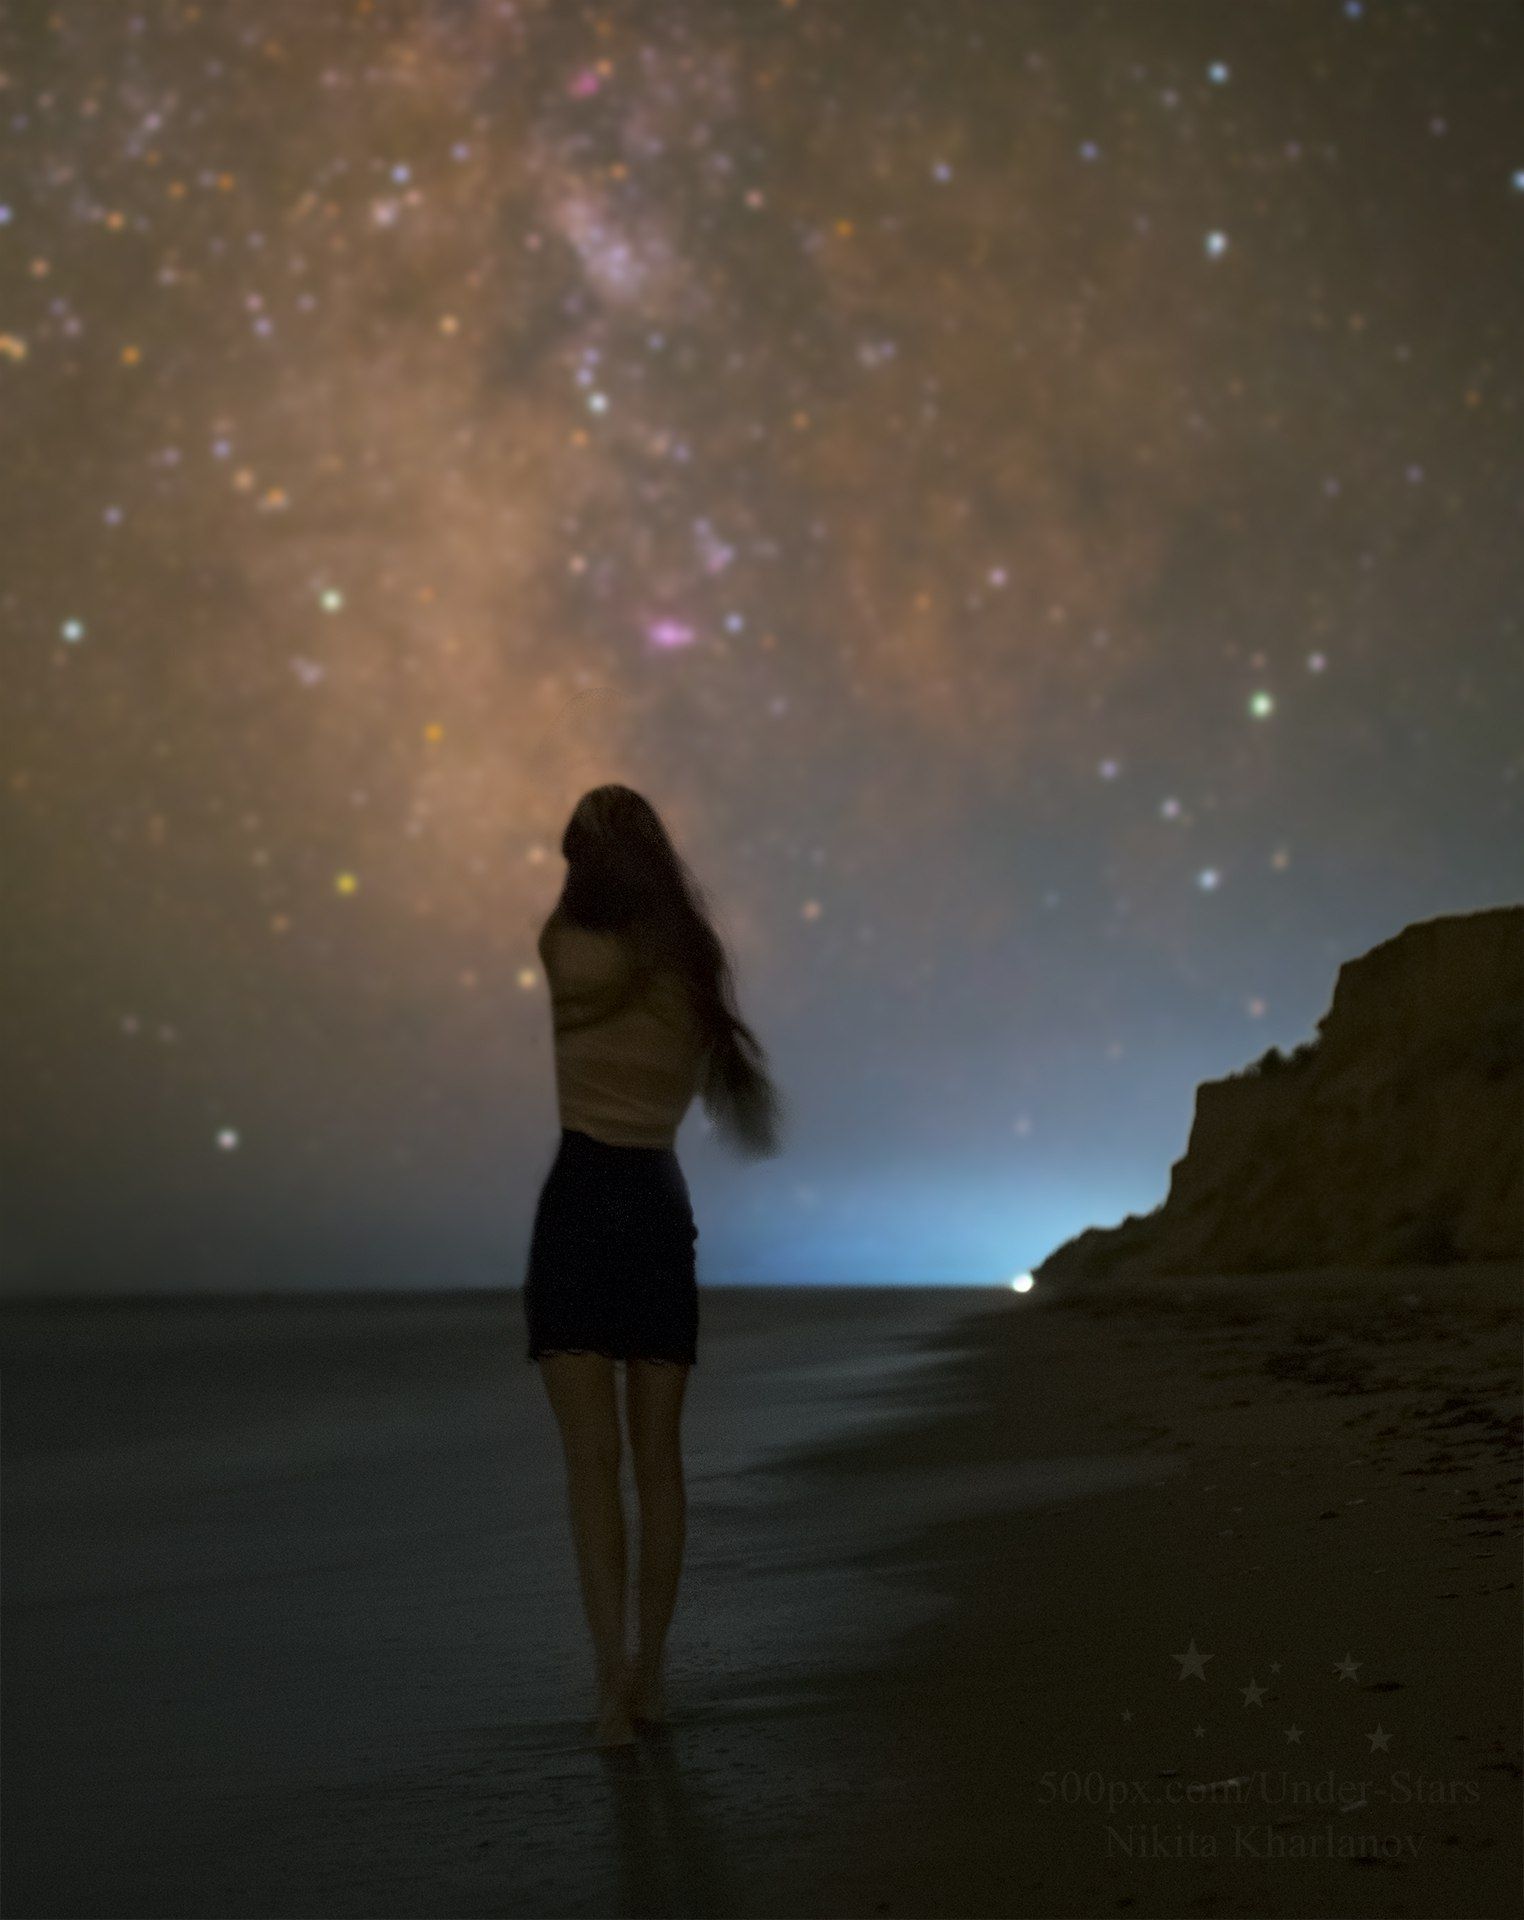 Млечный Путь, звезды, астрофотография, астрофото, ночь, ночной пейзаж, ночное фото, пейзаж, побережье, море, девушка, пляж, Харланов Никита